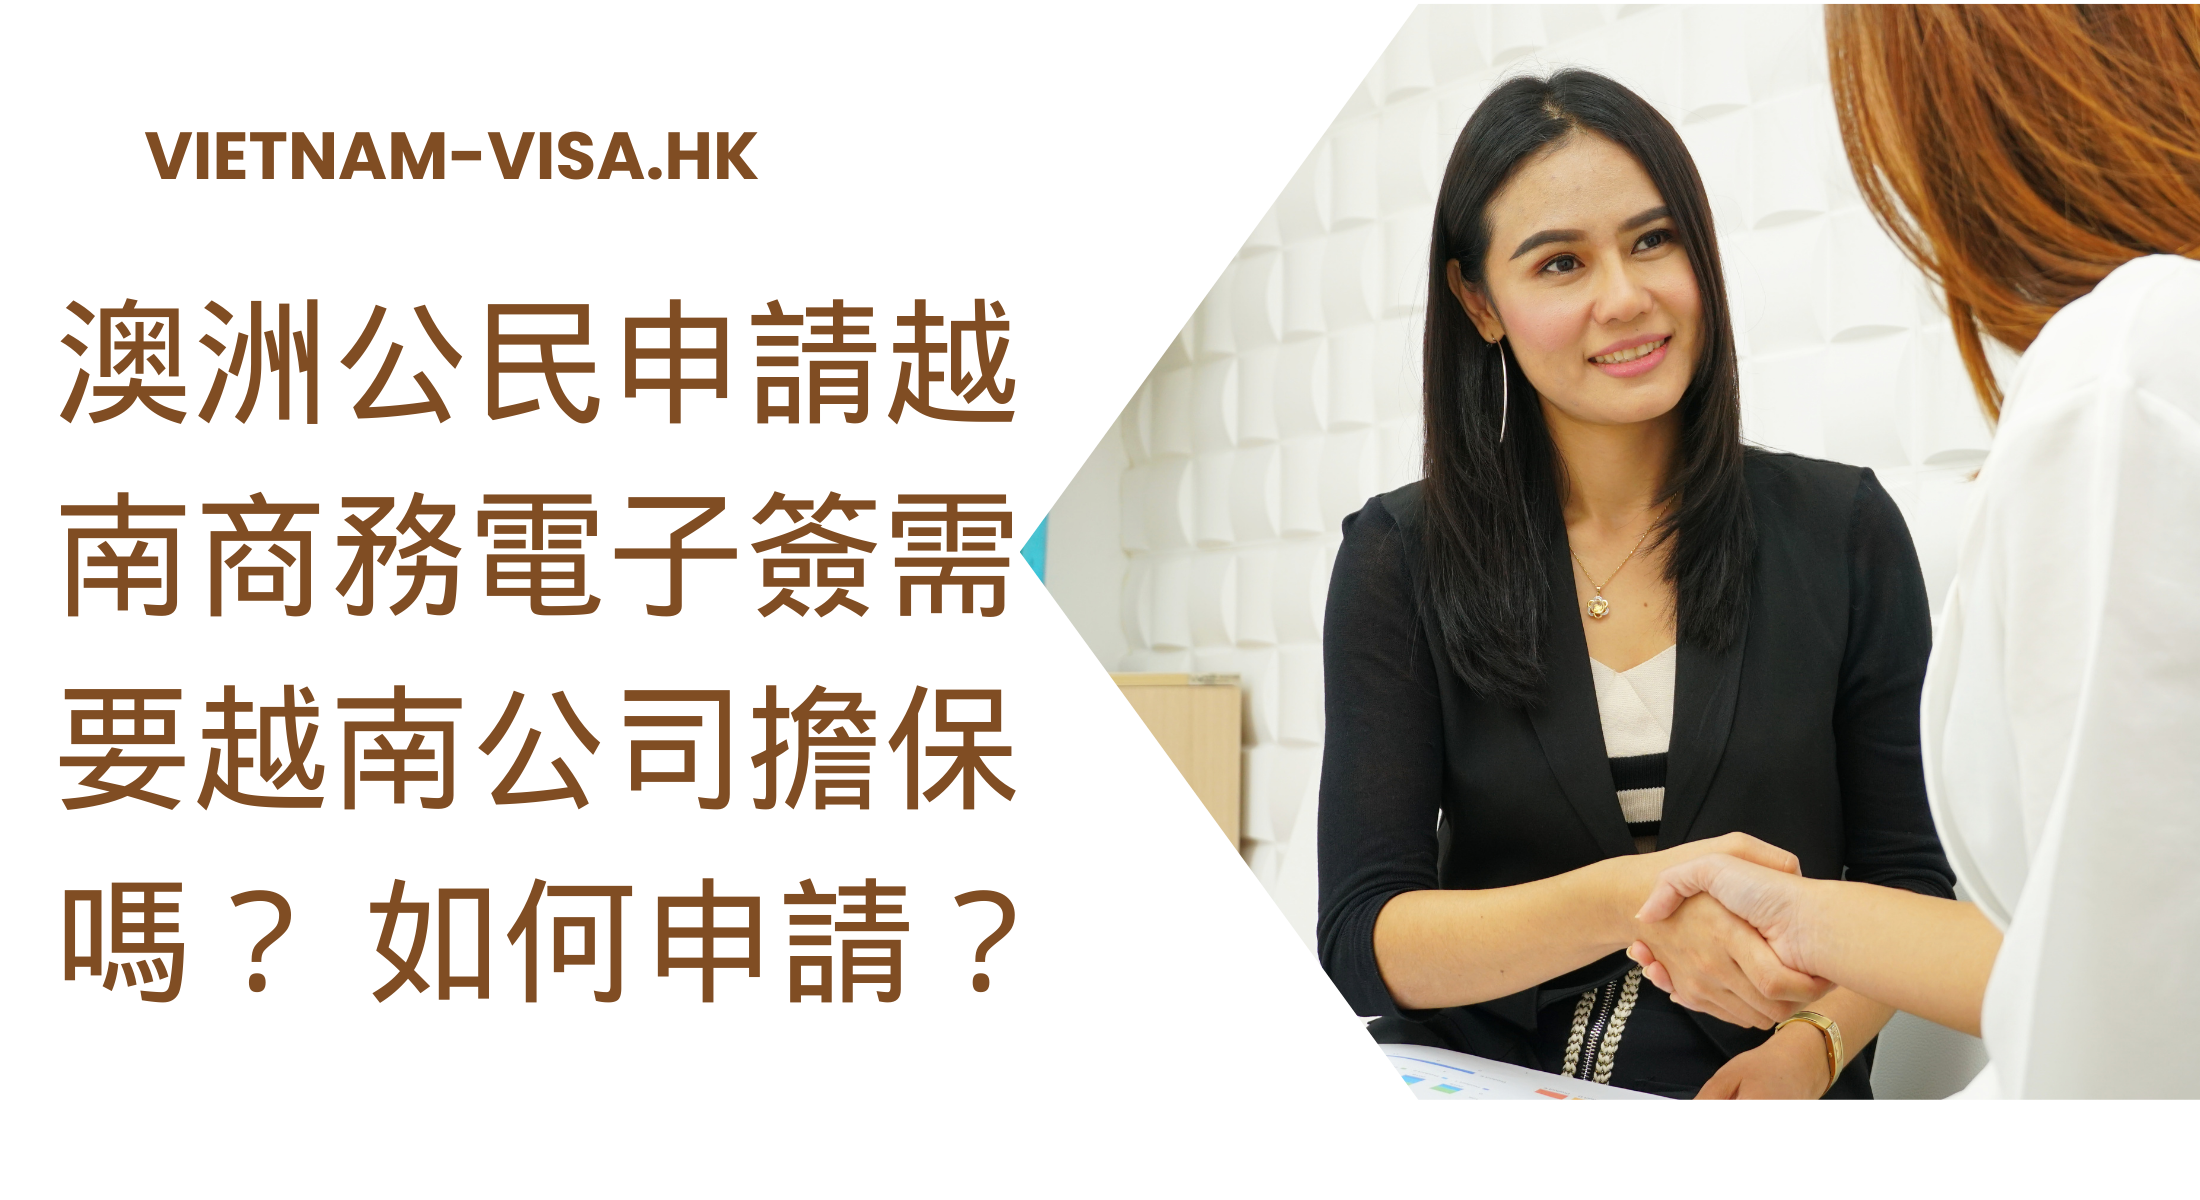 澳洲公民申請越南商務電子簽需要越南公司擔保嗎？ 如何申請？